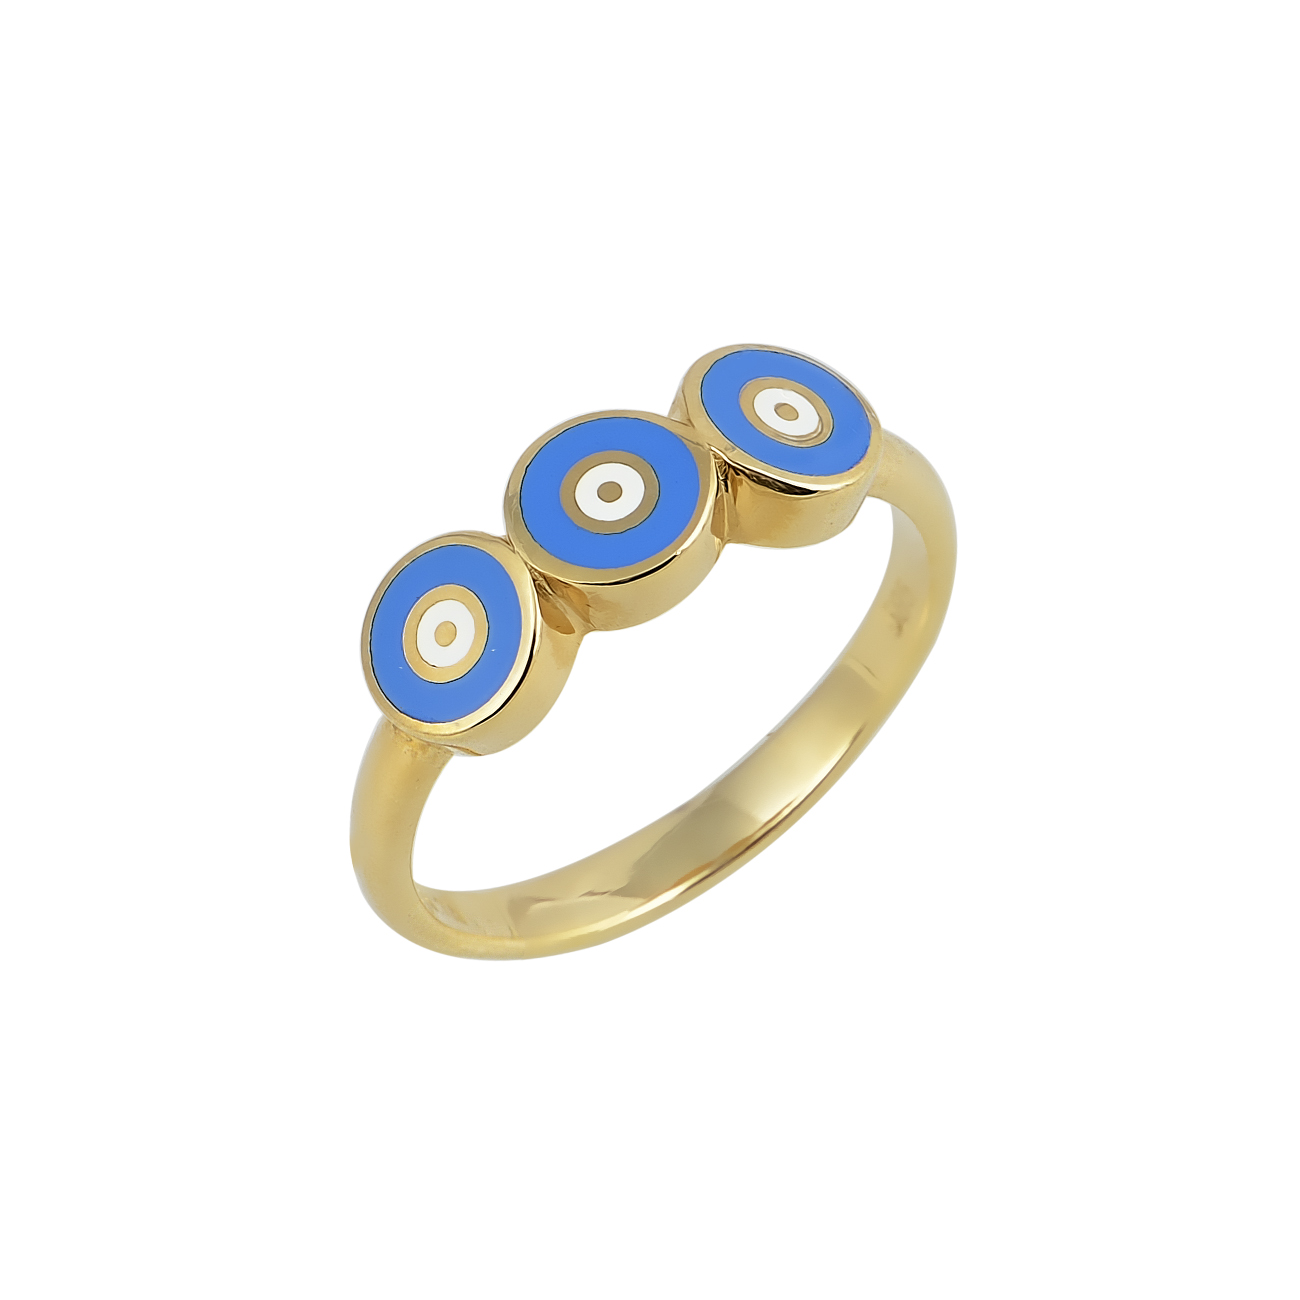 Εικόνα του προιόντος Χρυσό Δαχτυλίδι Τριπλό Μάτι Μπλε Σμάλτο